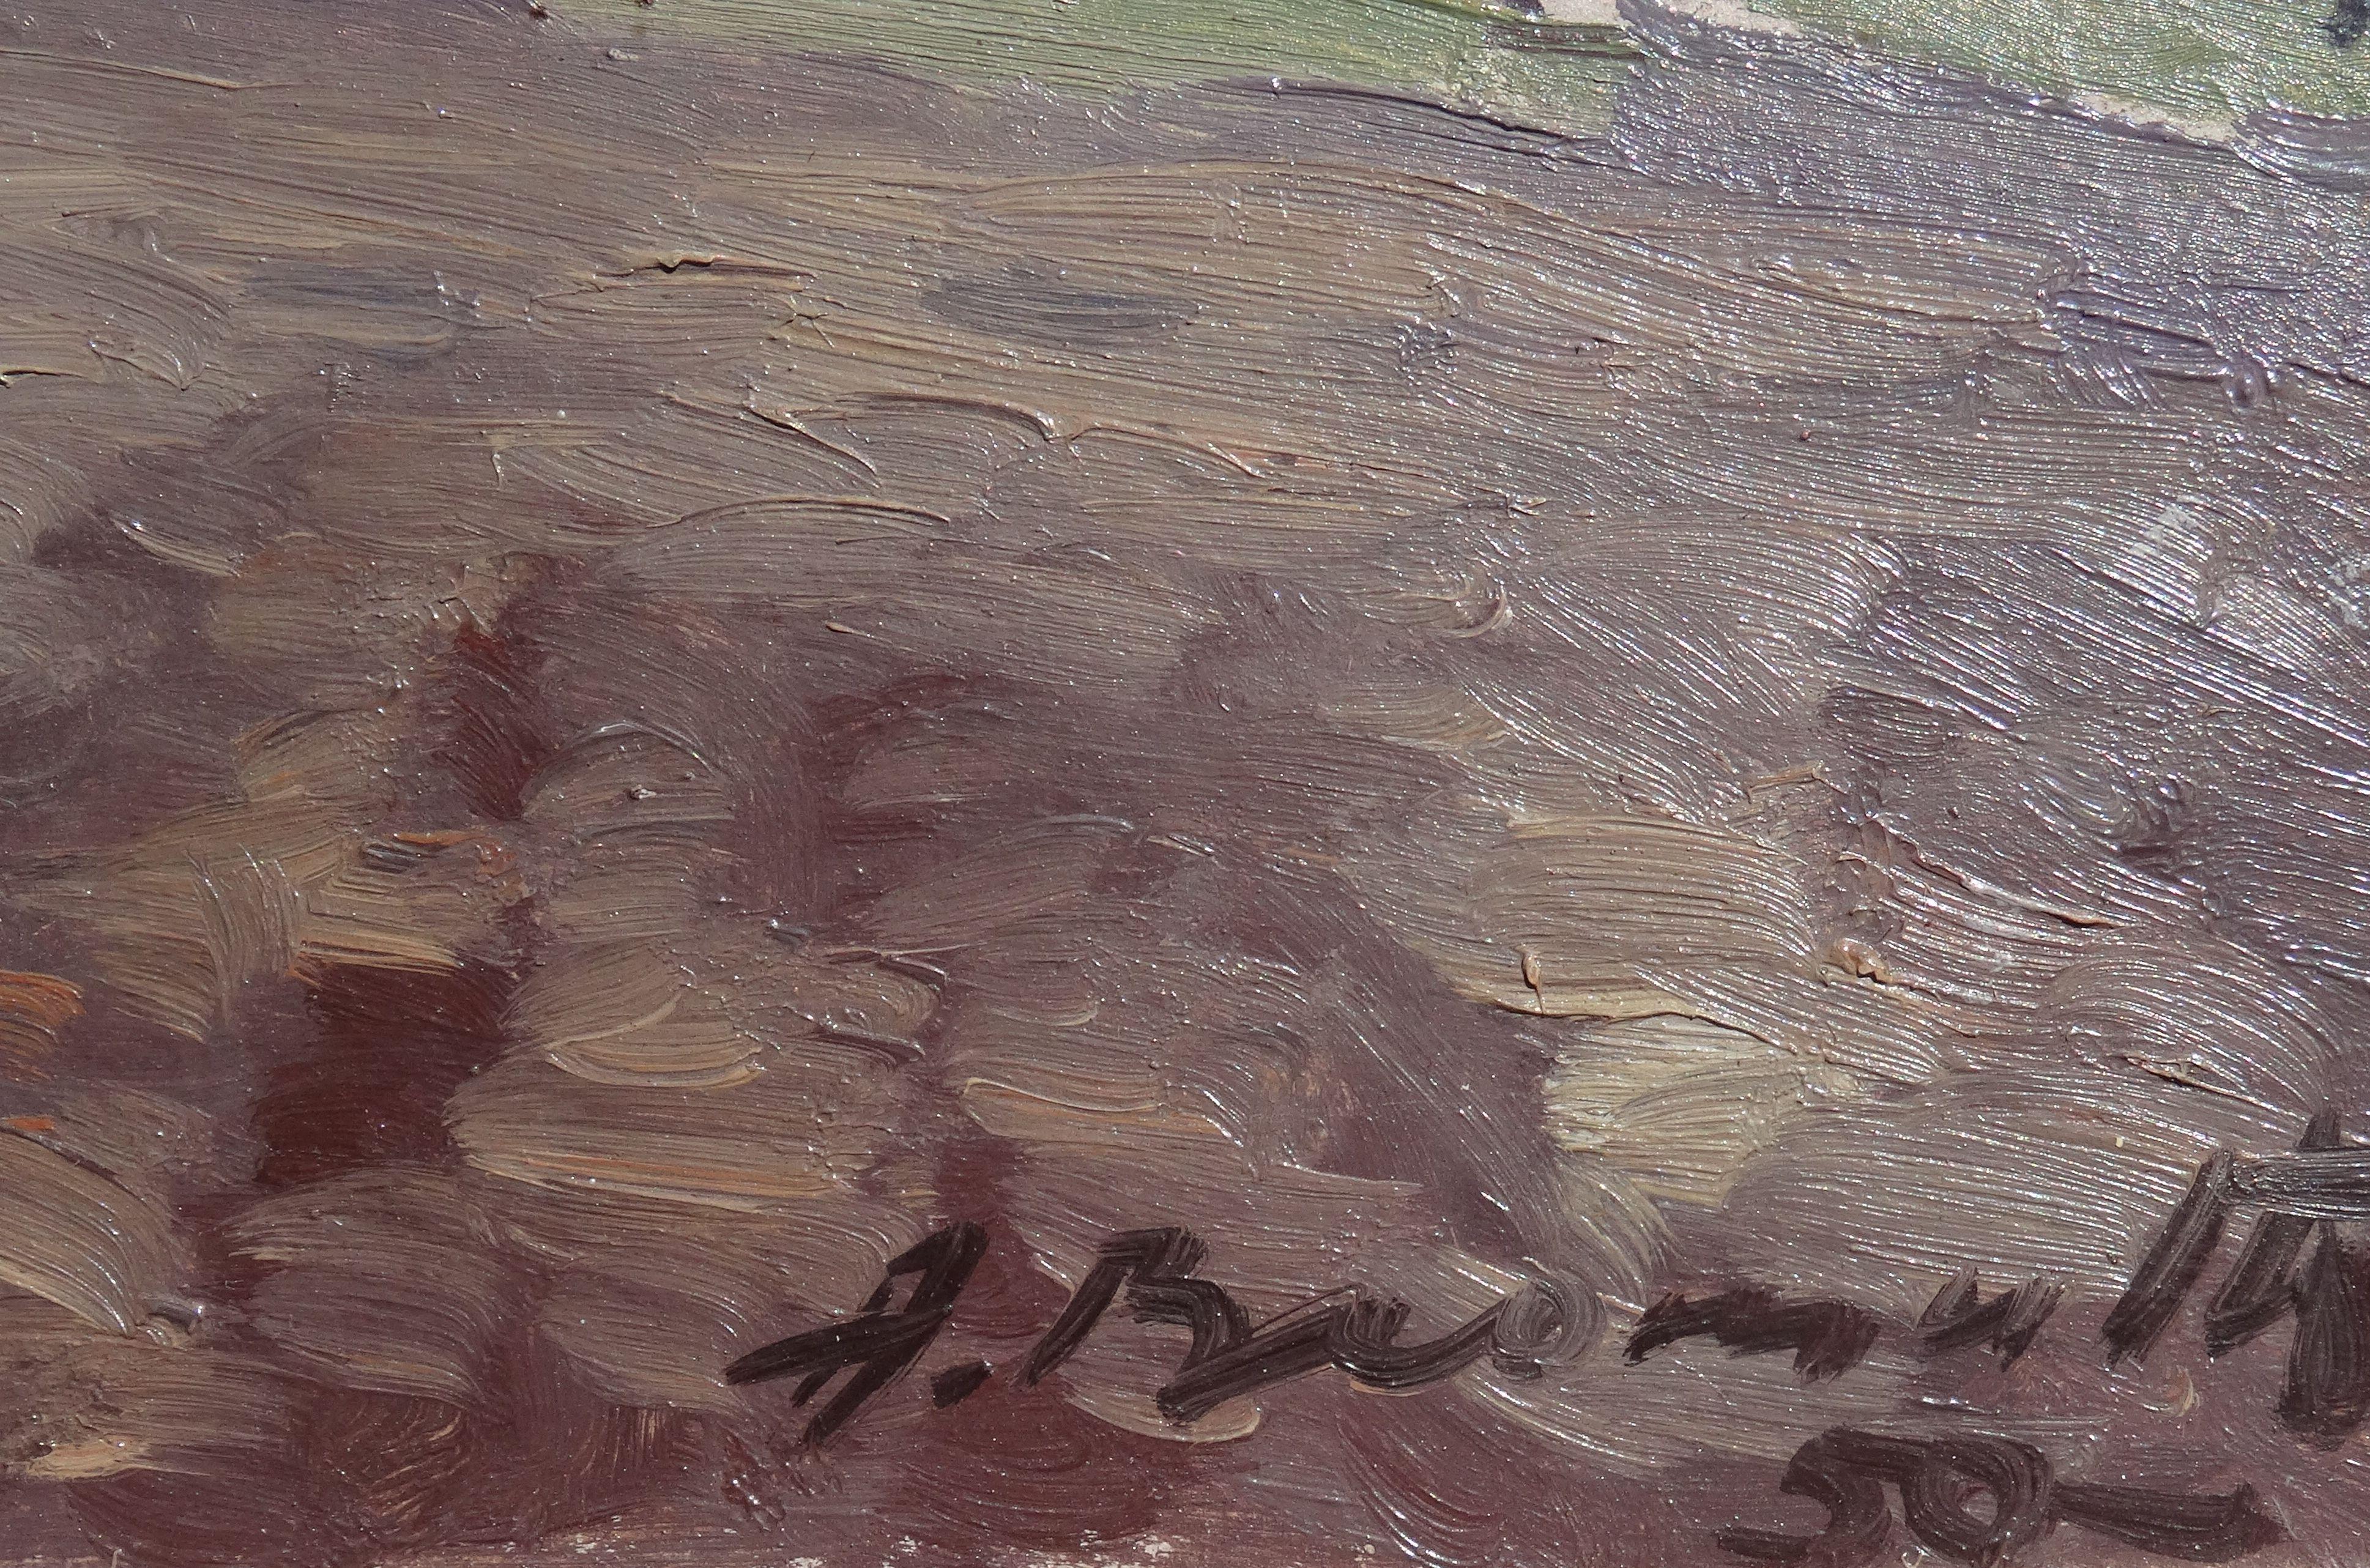  Countryside. 1950s, carton, huile, 26x37 cm - Réalisme Painting par Alfejs Bromults